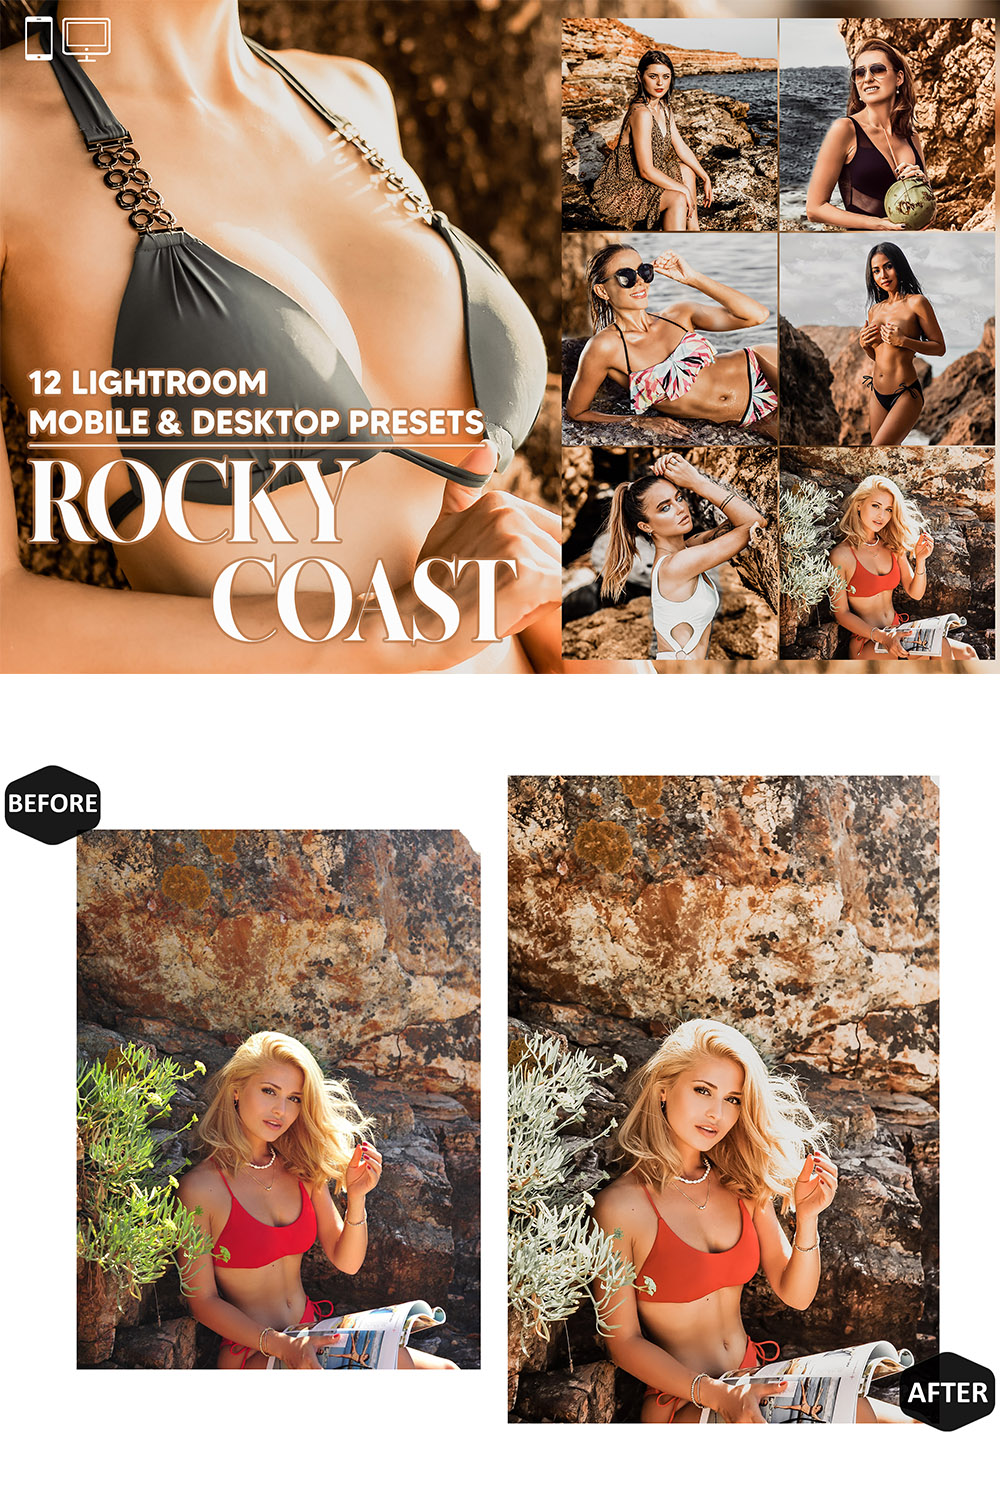 12 Rocky Coast Lightroom Presets, Tanned Skin Mobile Preset, Summer Desktop LR Filter DNG Lifestyle Theme For Blogger Portrait Instagram pinterest preview image.